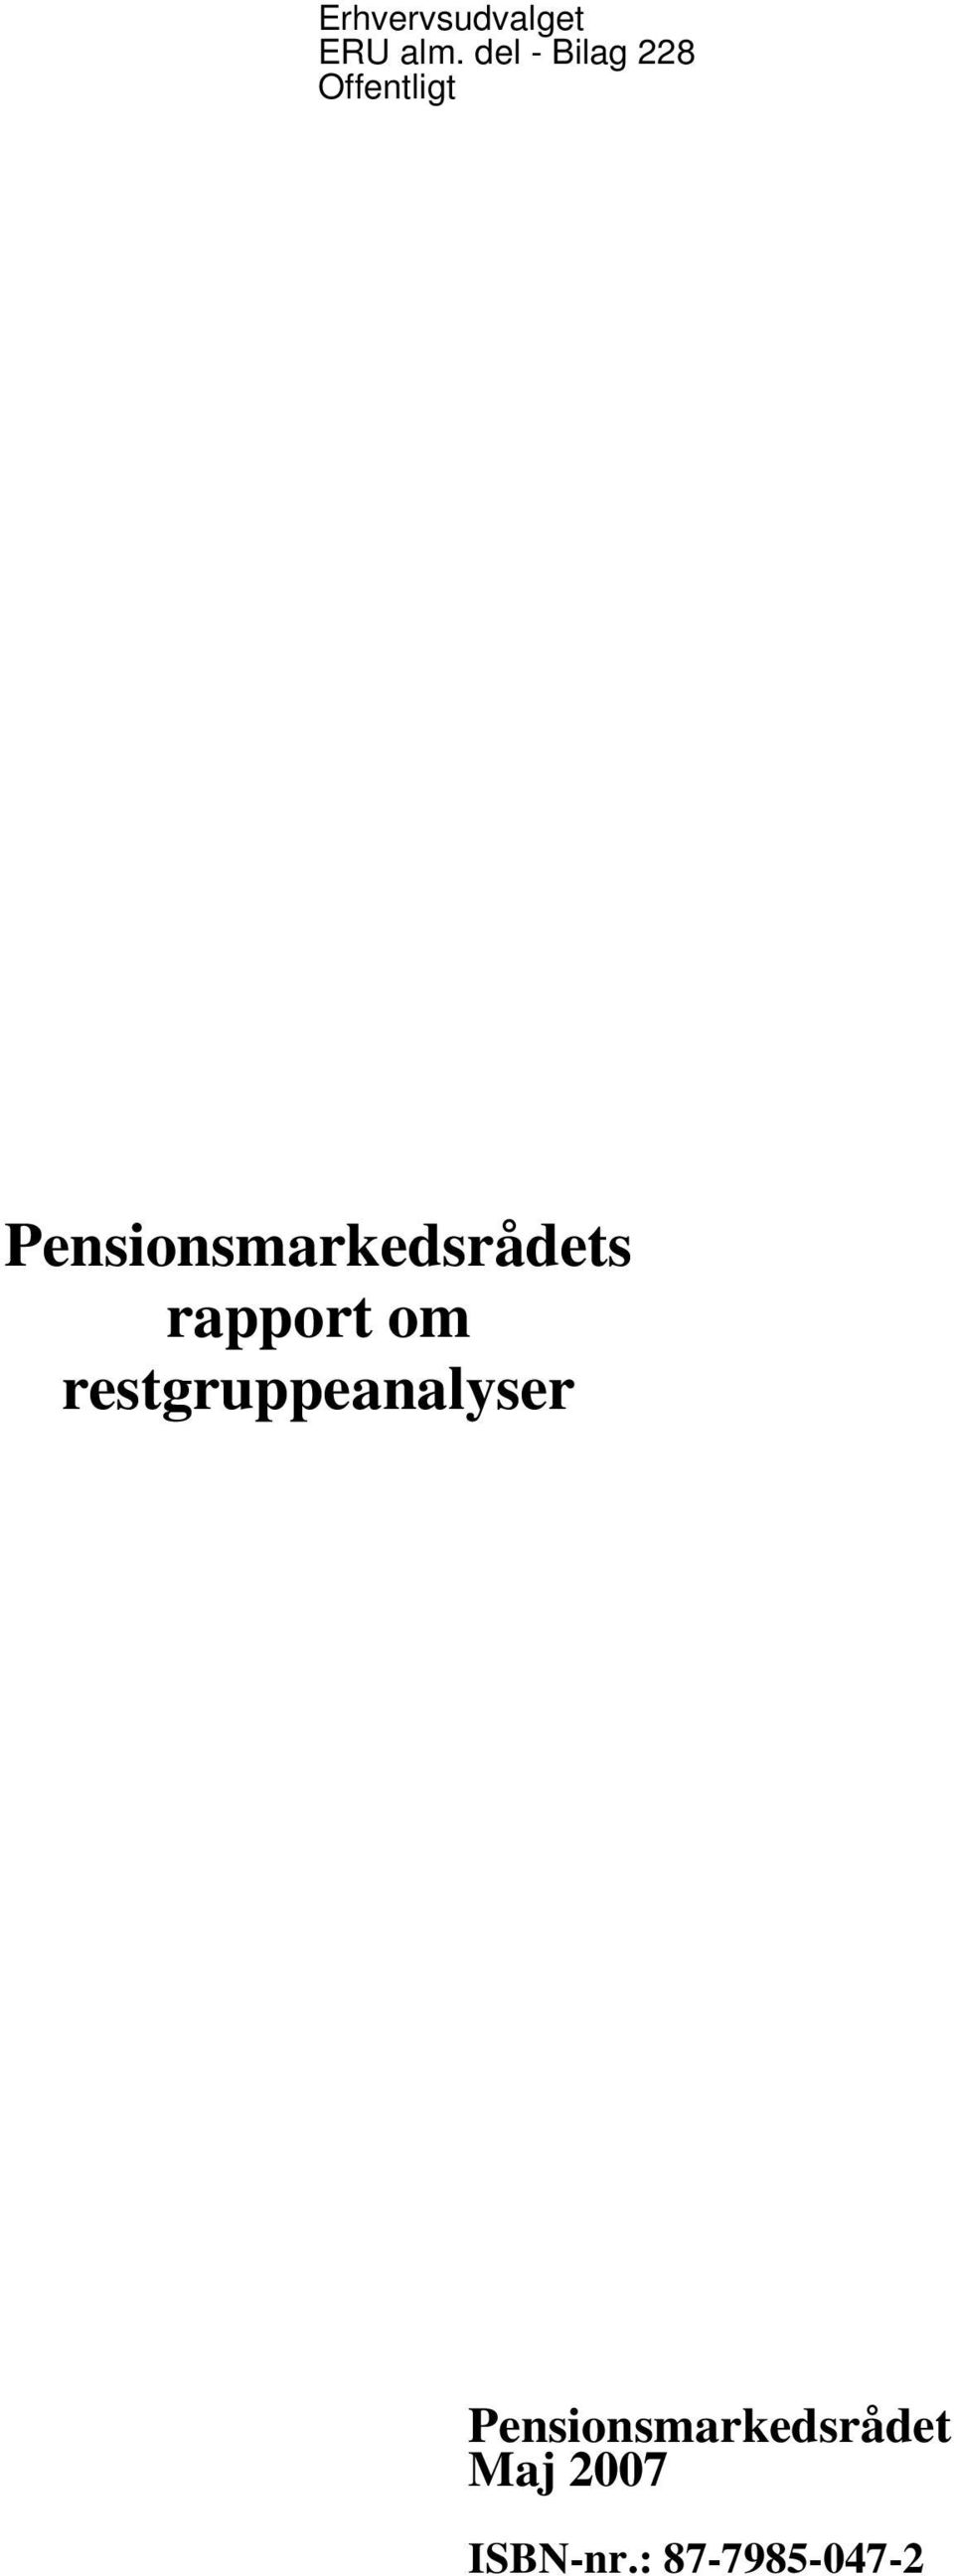 Pensionsmarkedsrådets rapport om